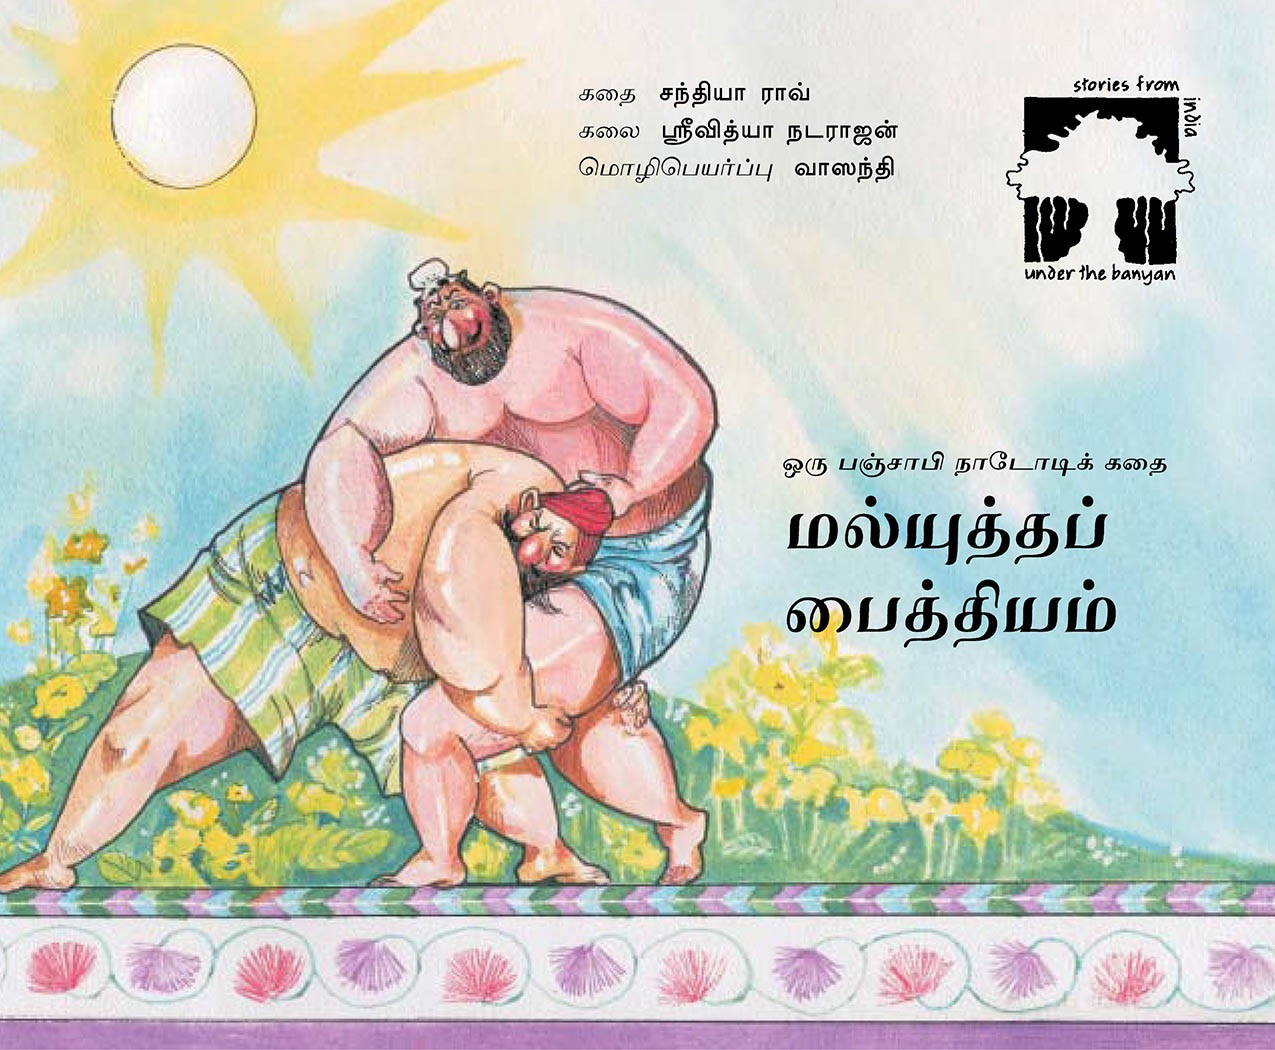 Wrestling Mania/Malyuddam Paithiyam (Tamil)